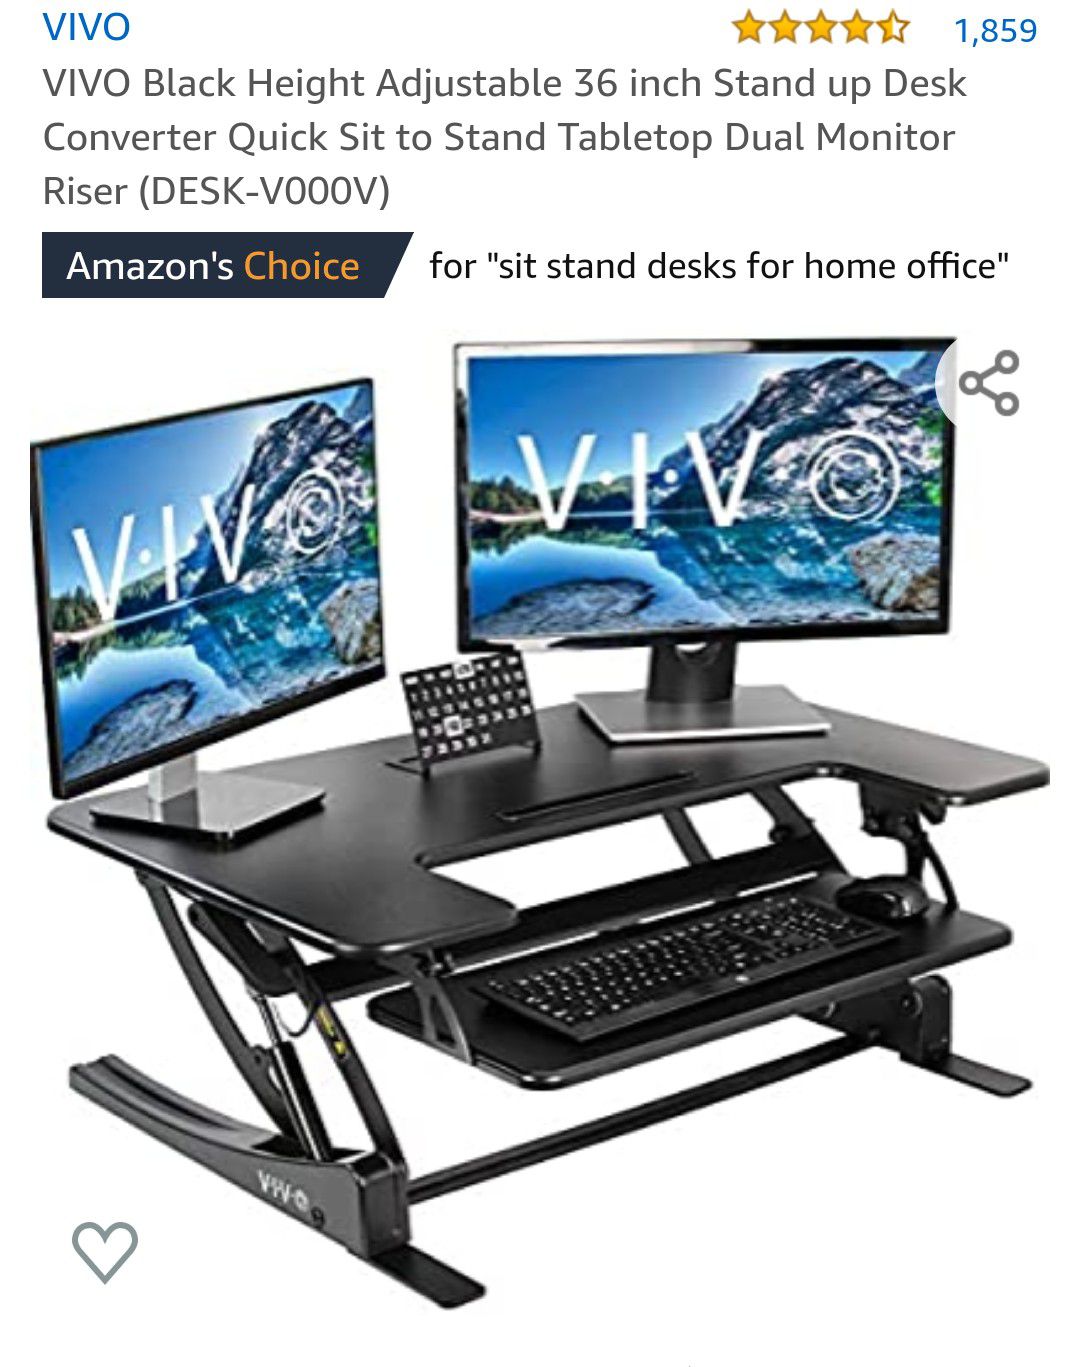 Vivo (Desk-V000V) 36" stand up desk riser